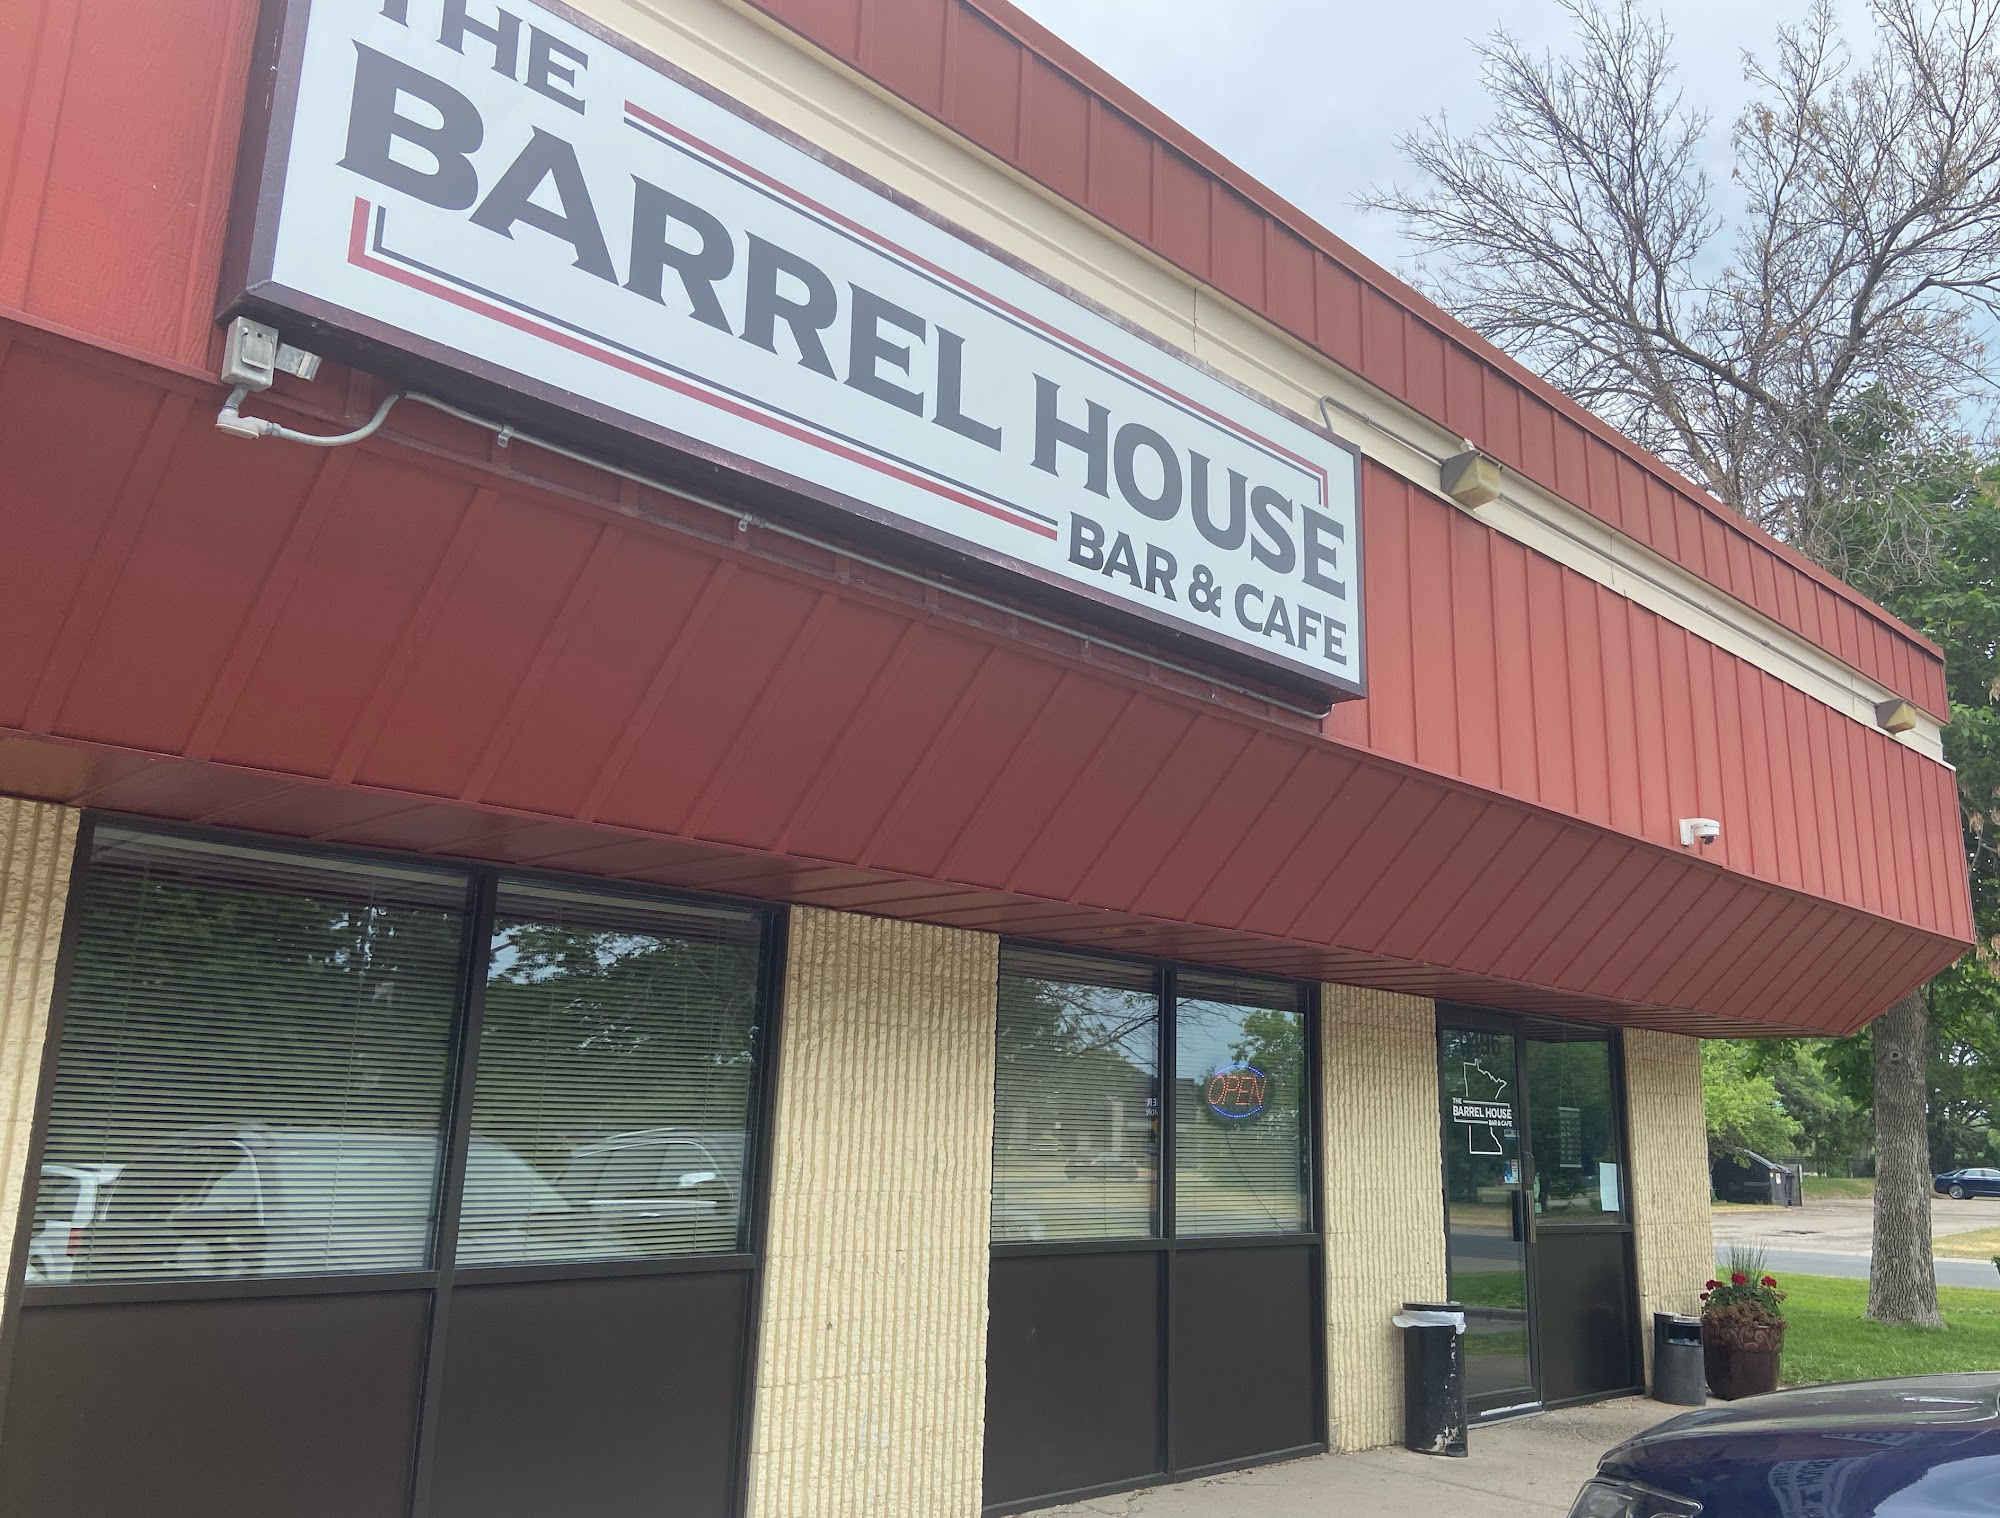 The Barrel House Bar & Cafe